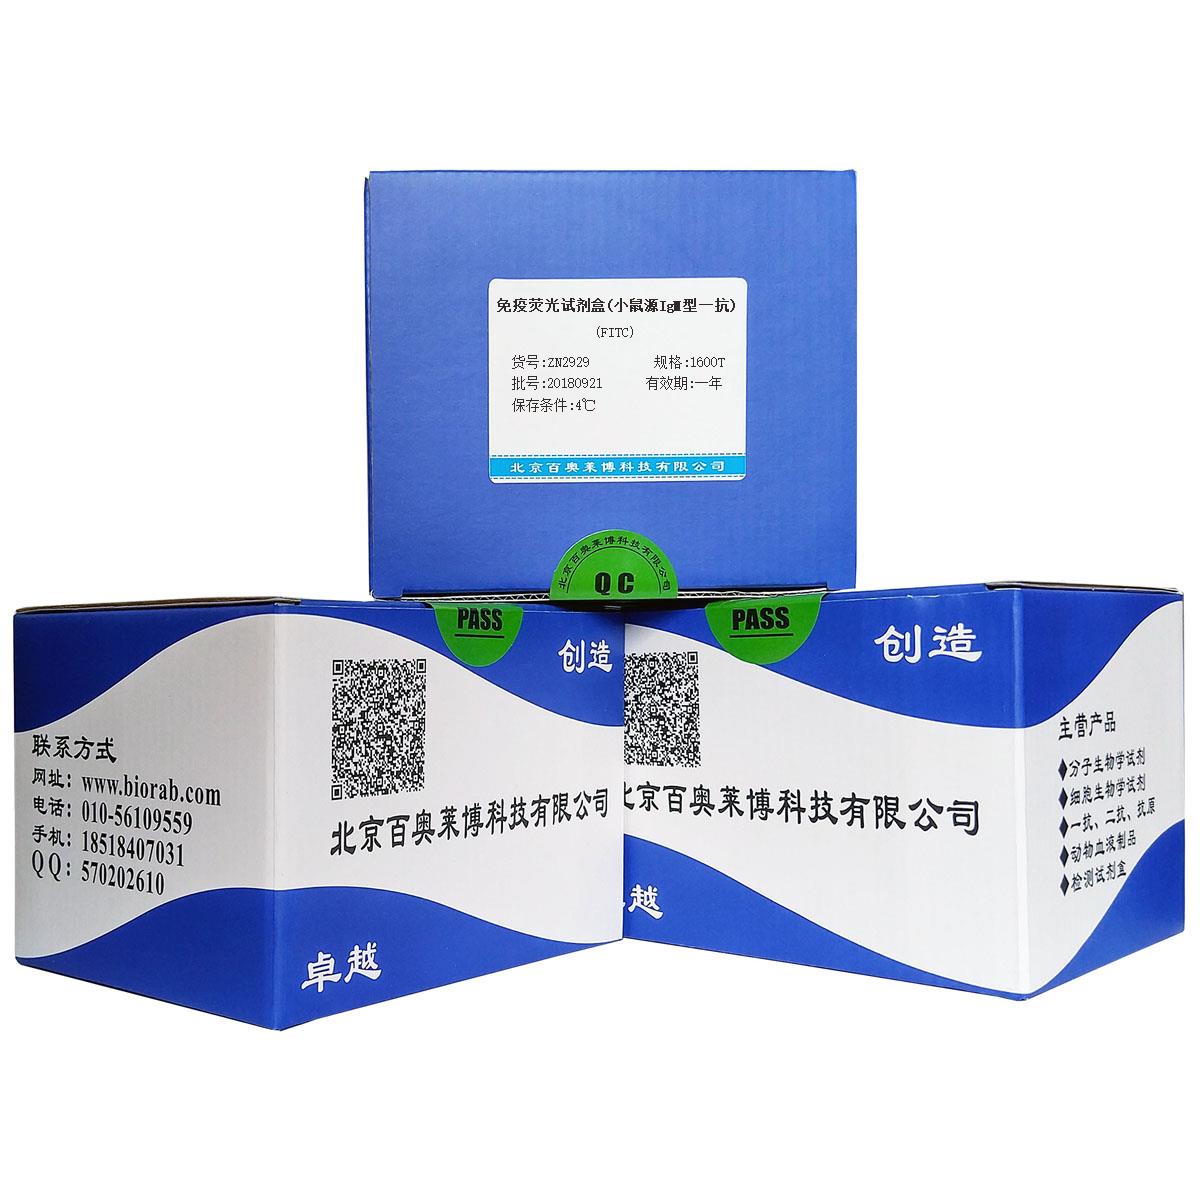 免疫荧光试剂盒(小鼠源IgM型一抗)(FITC)